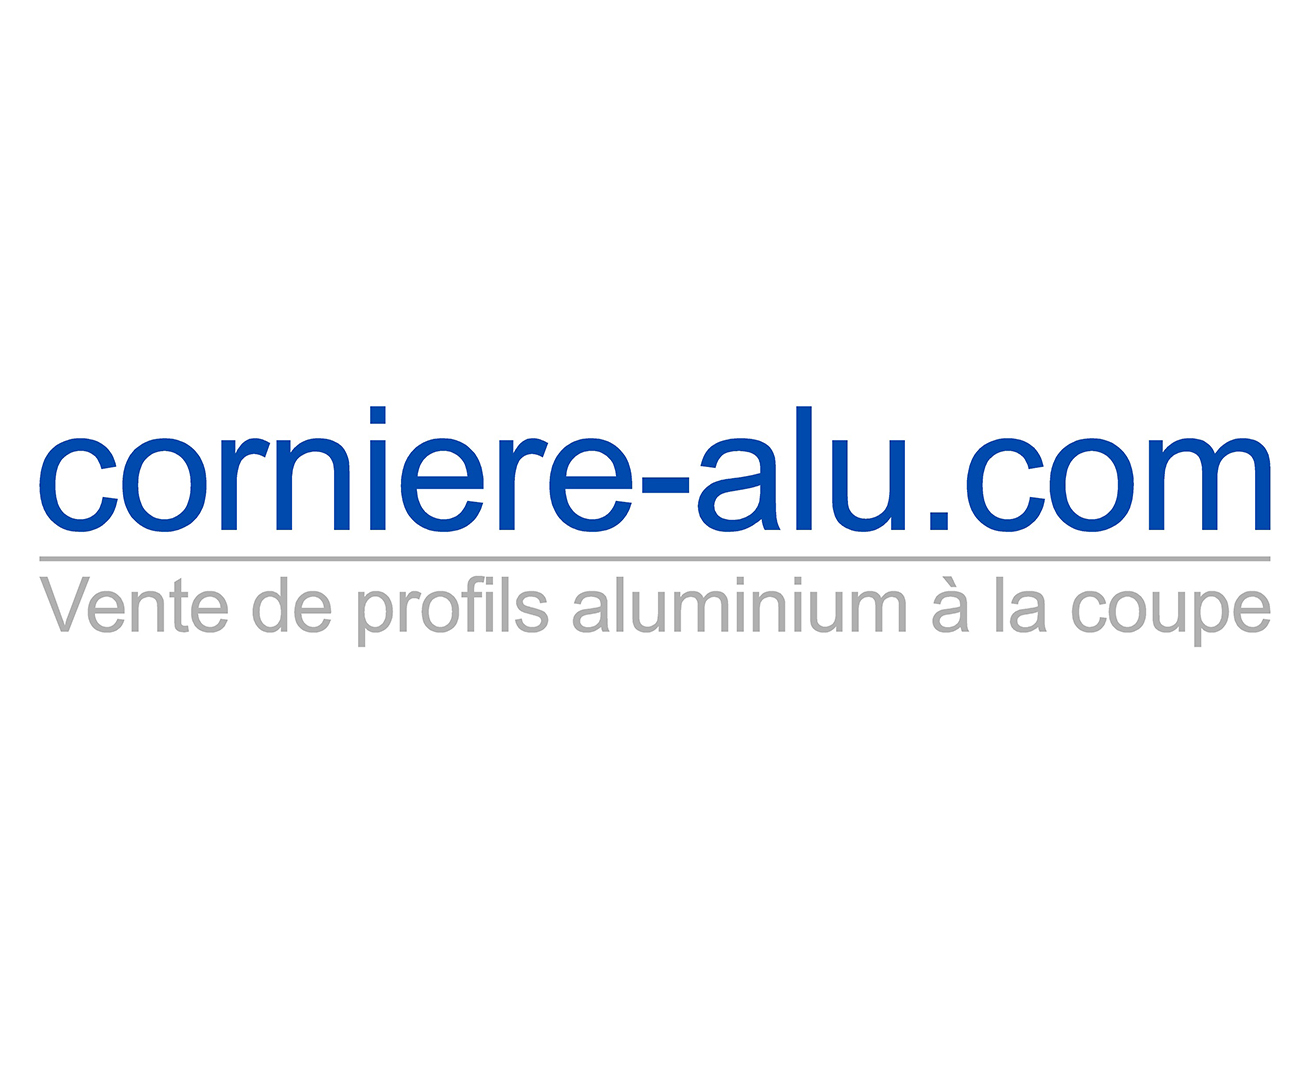 Corniere-alu.com